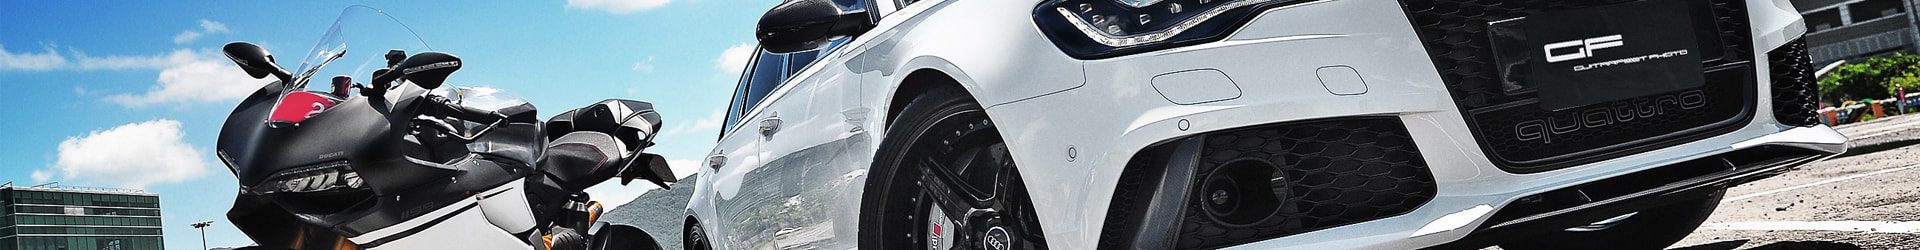 –跑房新星– BMW F80 M3 藍 開箱拍攝